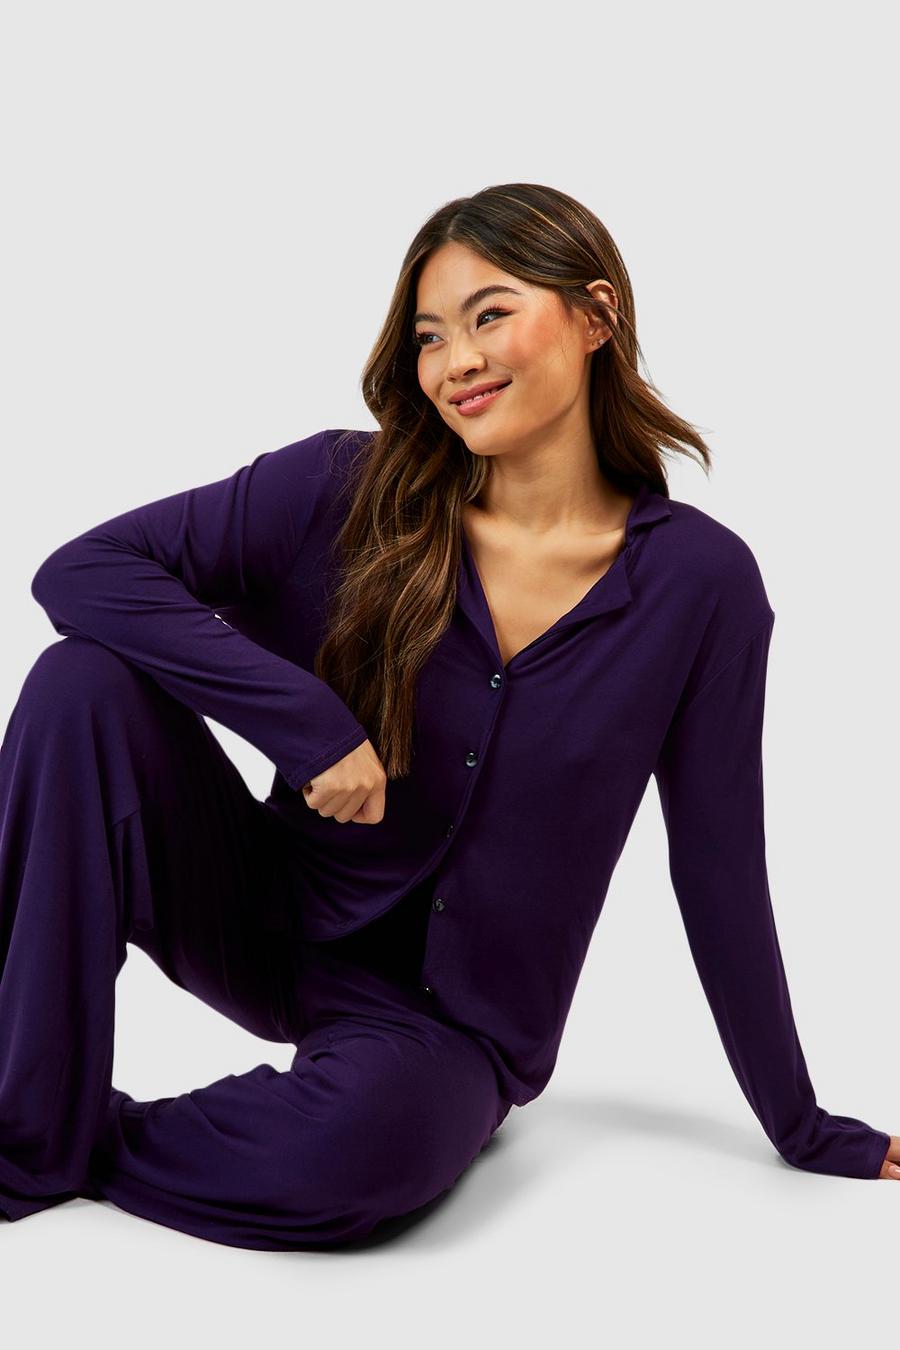 Jewel purple Zacht Jersey Overhemd Met Knopen